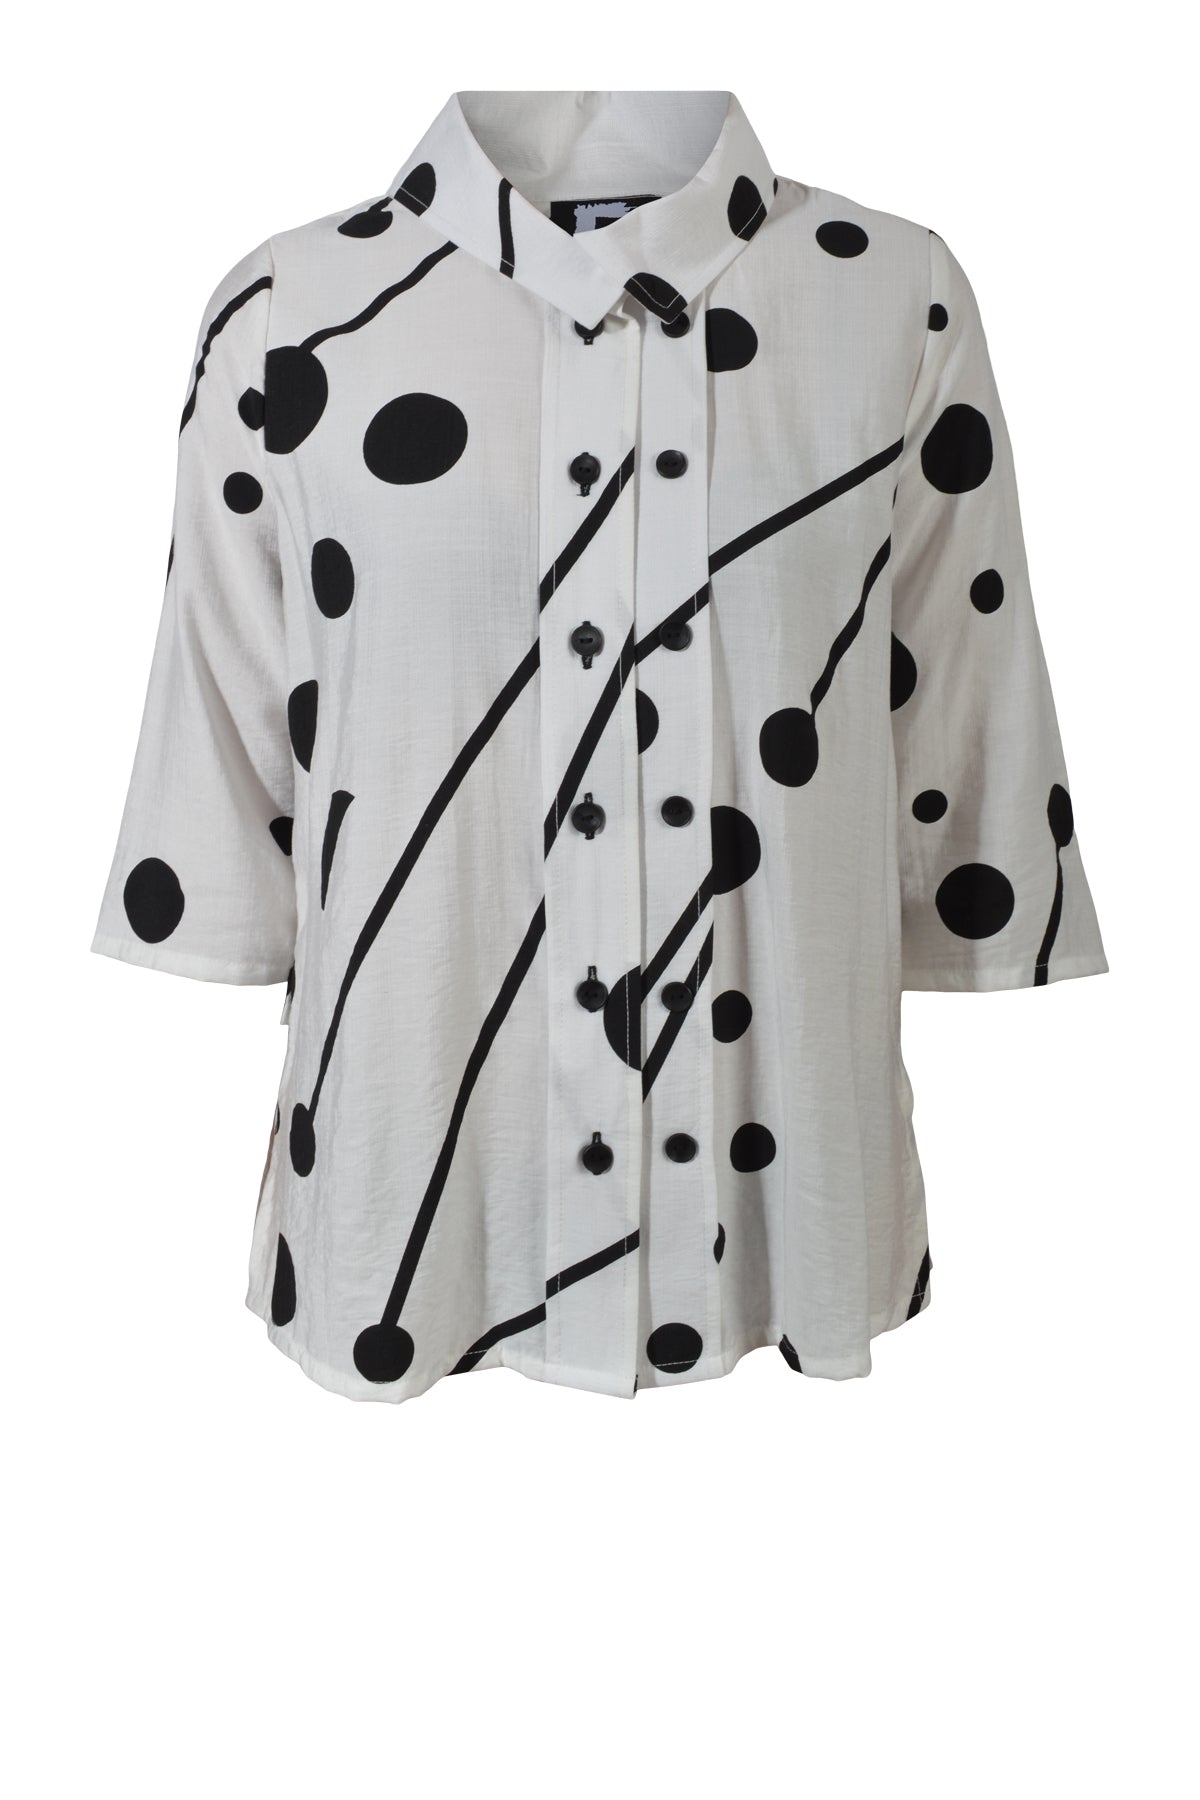 E Avantgarde skjorte/jakke 14140-1, White